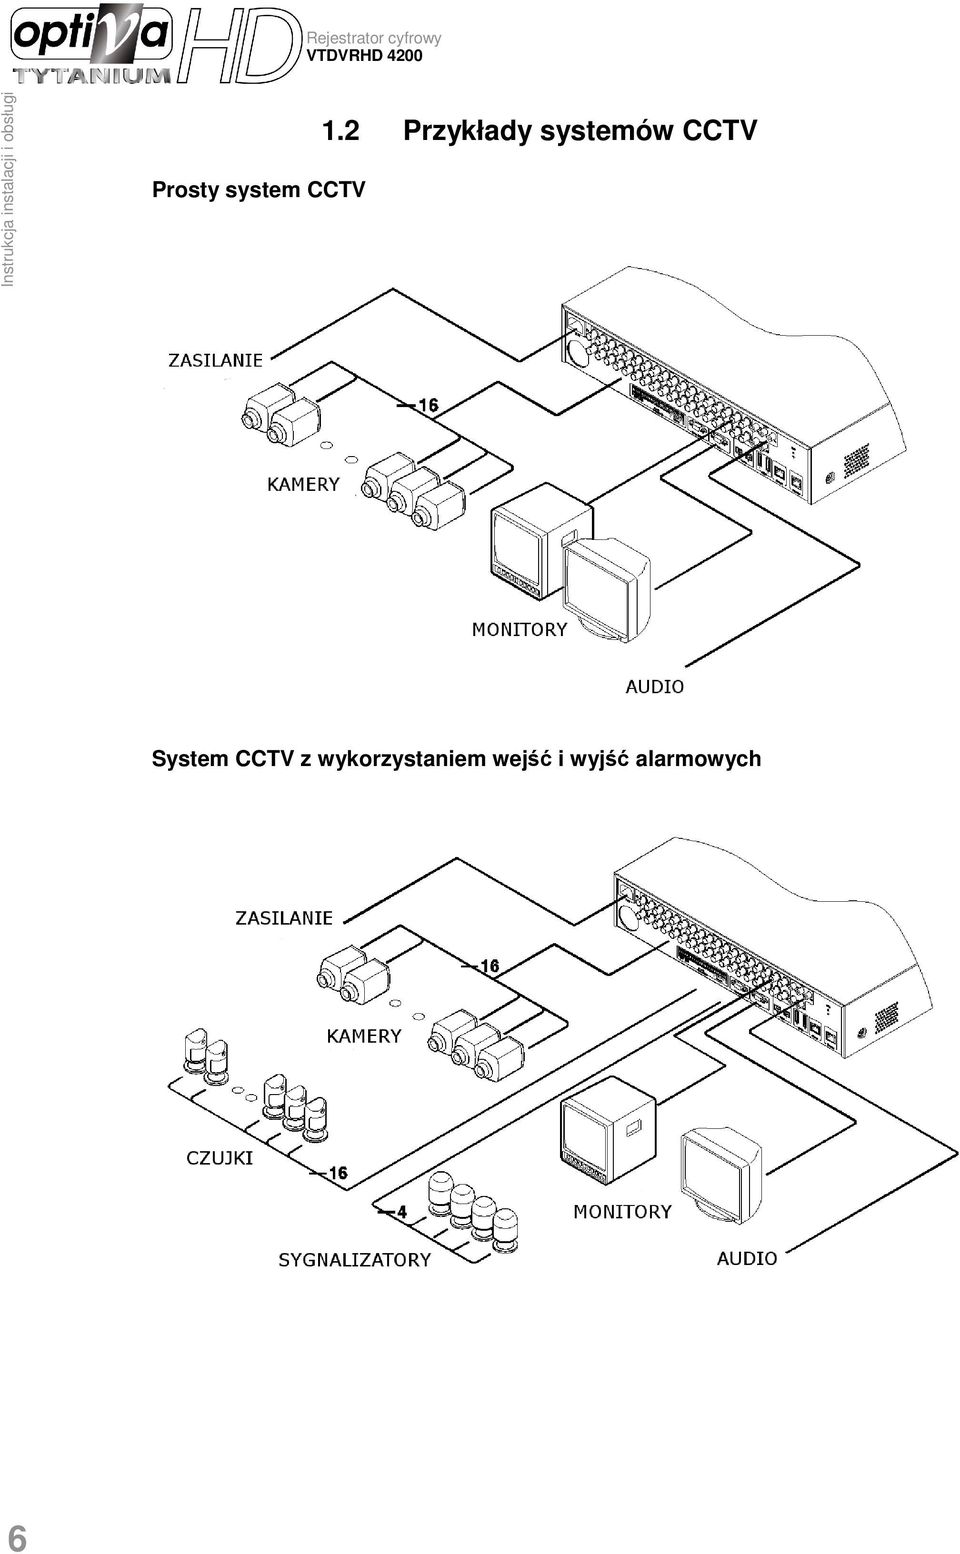 2 Przykłady systemów CCTV